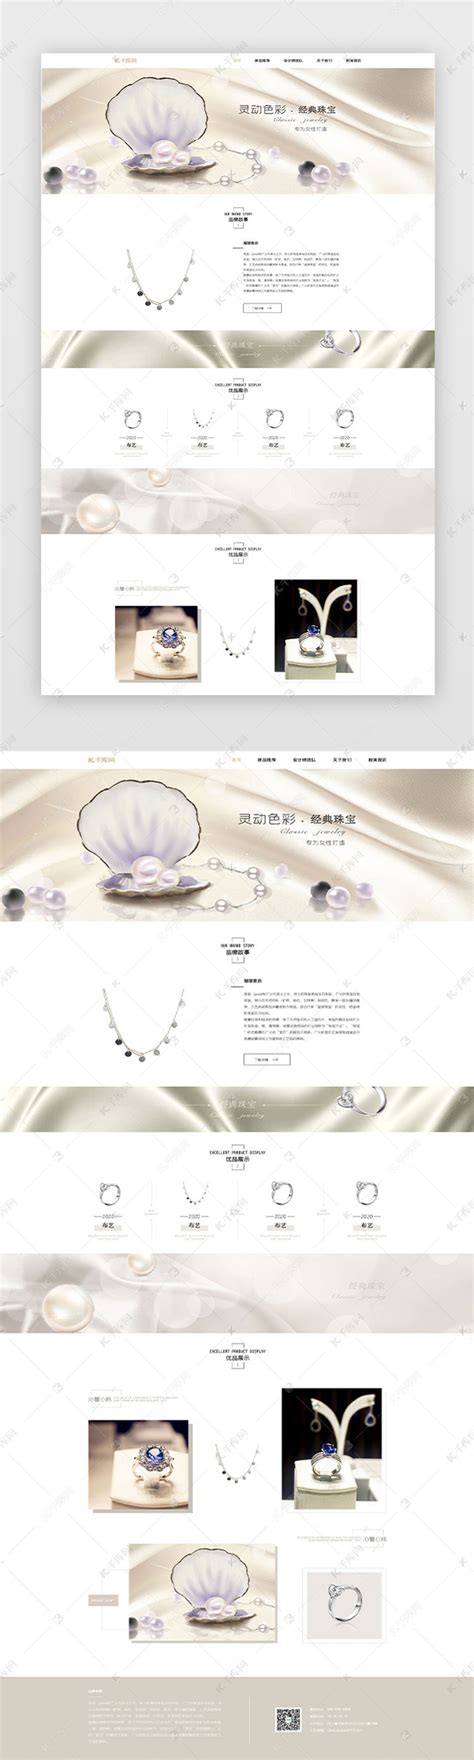 上海精典珠宝首饰有限公司网站建设案例 - 尚南网络